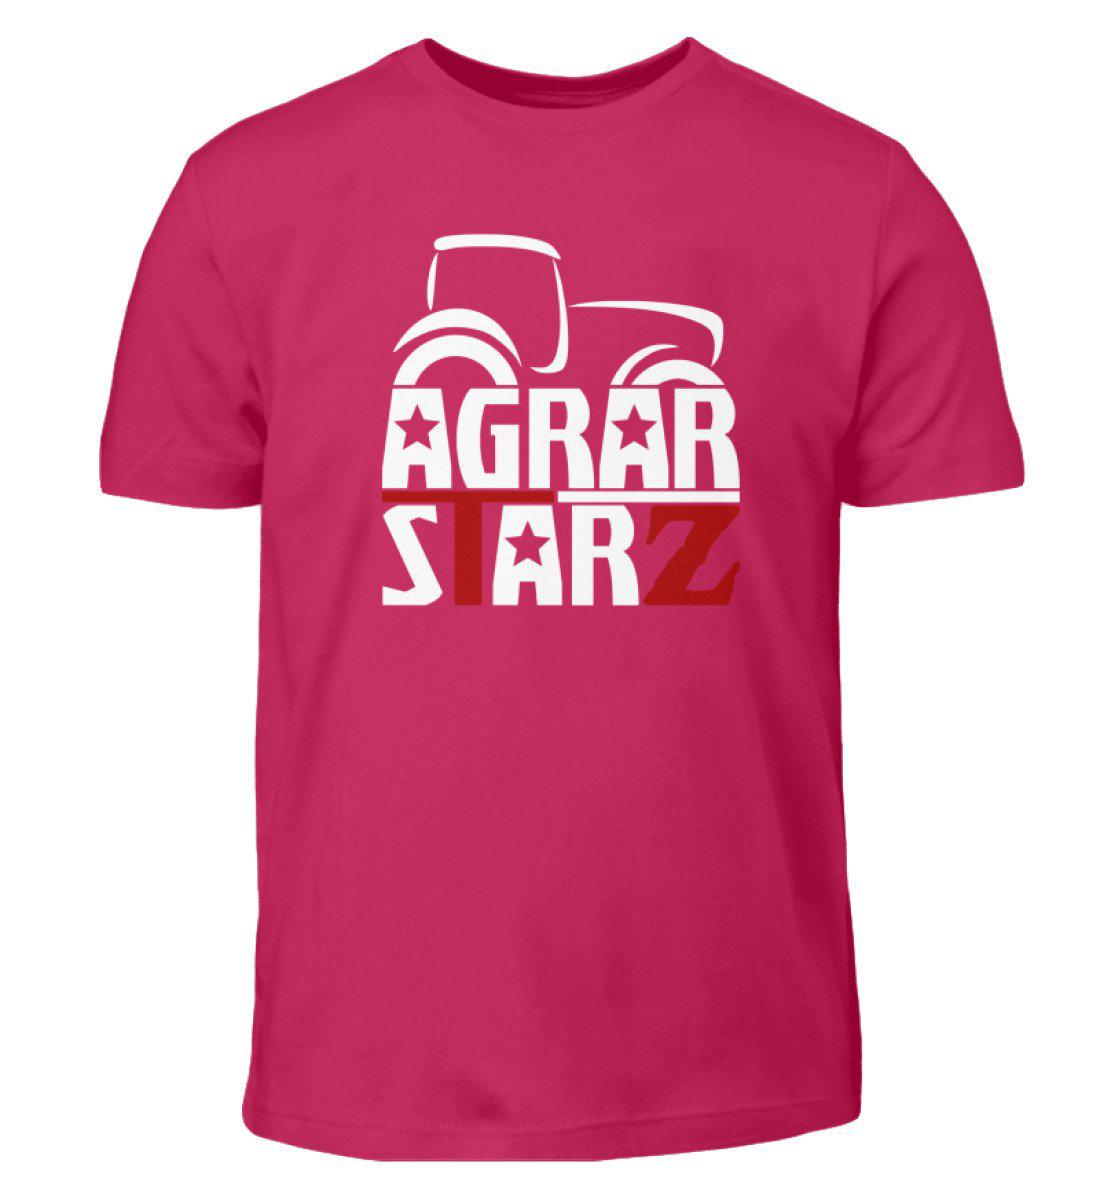 Agrarstarz · Kinder T-Shirt-Kinder T-Shirt-Sorbet-3/4 (98/104)-Agrarstarz